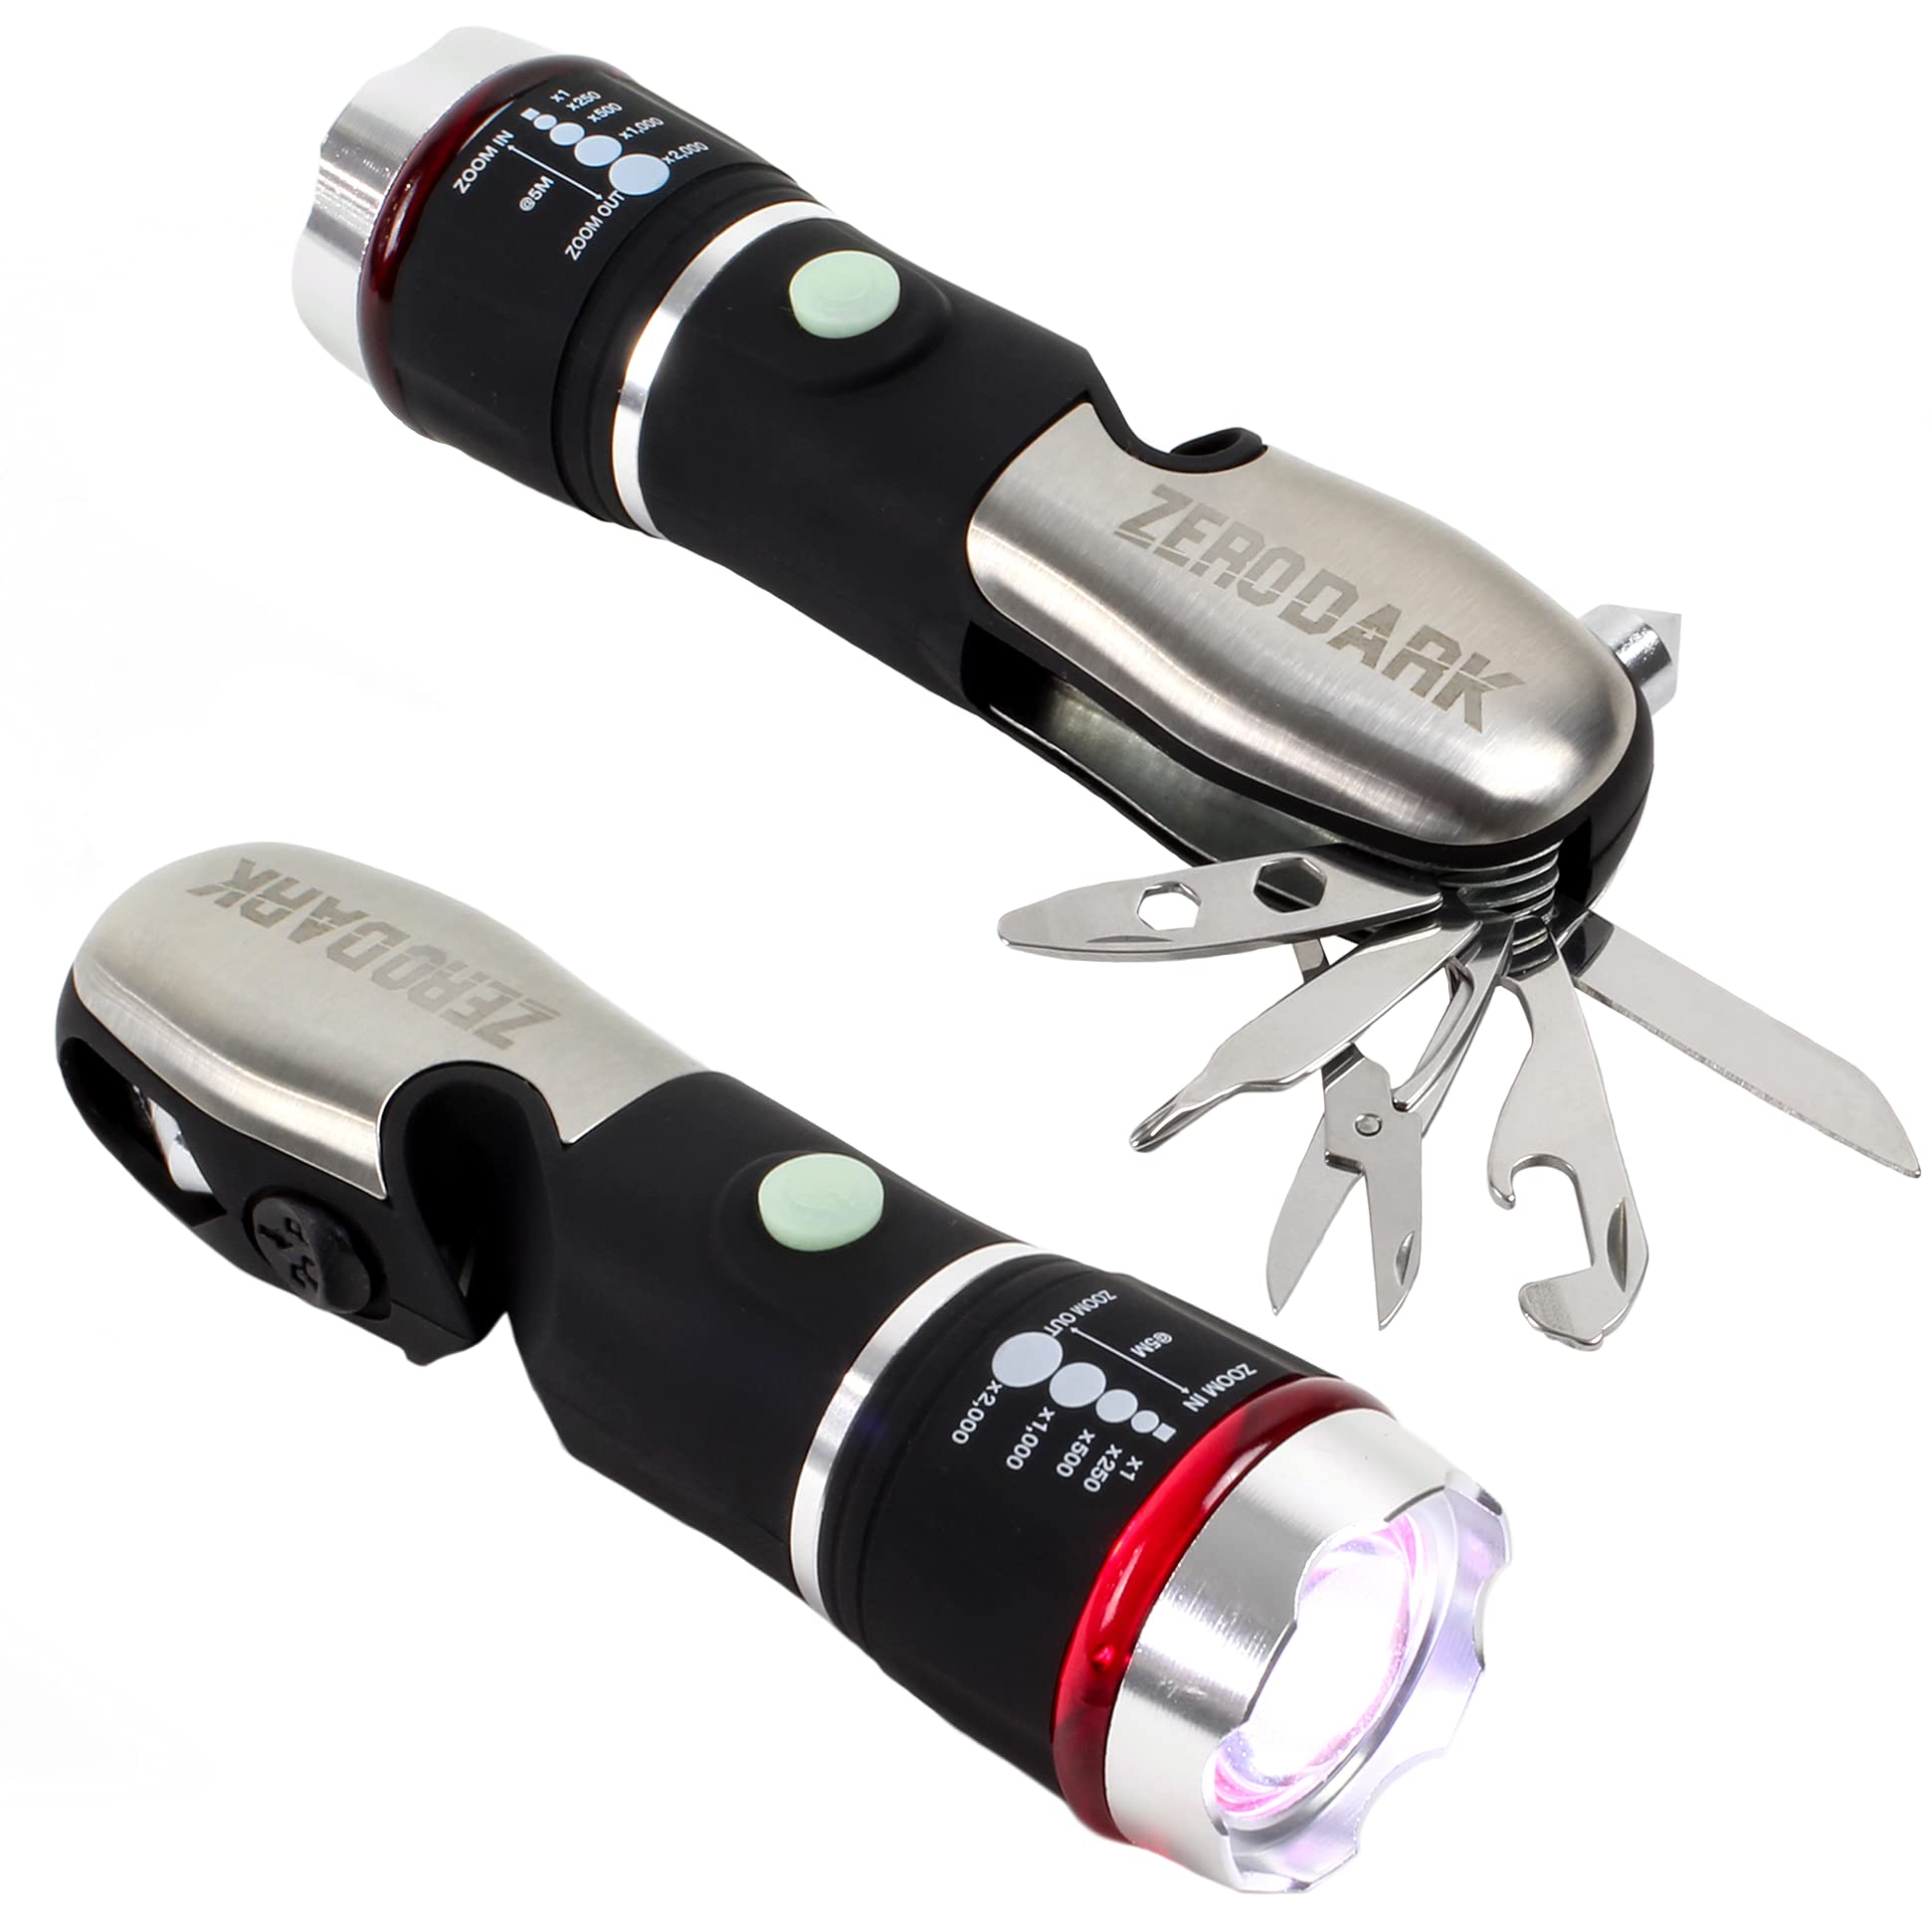 ''ZeroDark POCKET KNIFE Flashlight Multitool Emergency Car Kit with Car Window Breaker Seatbelt Cutte